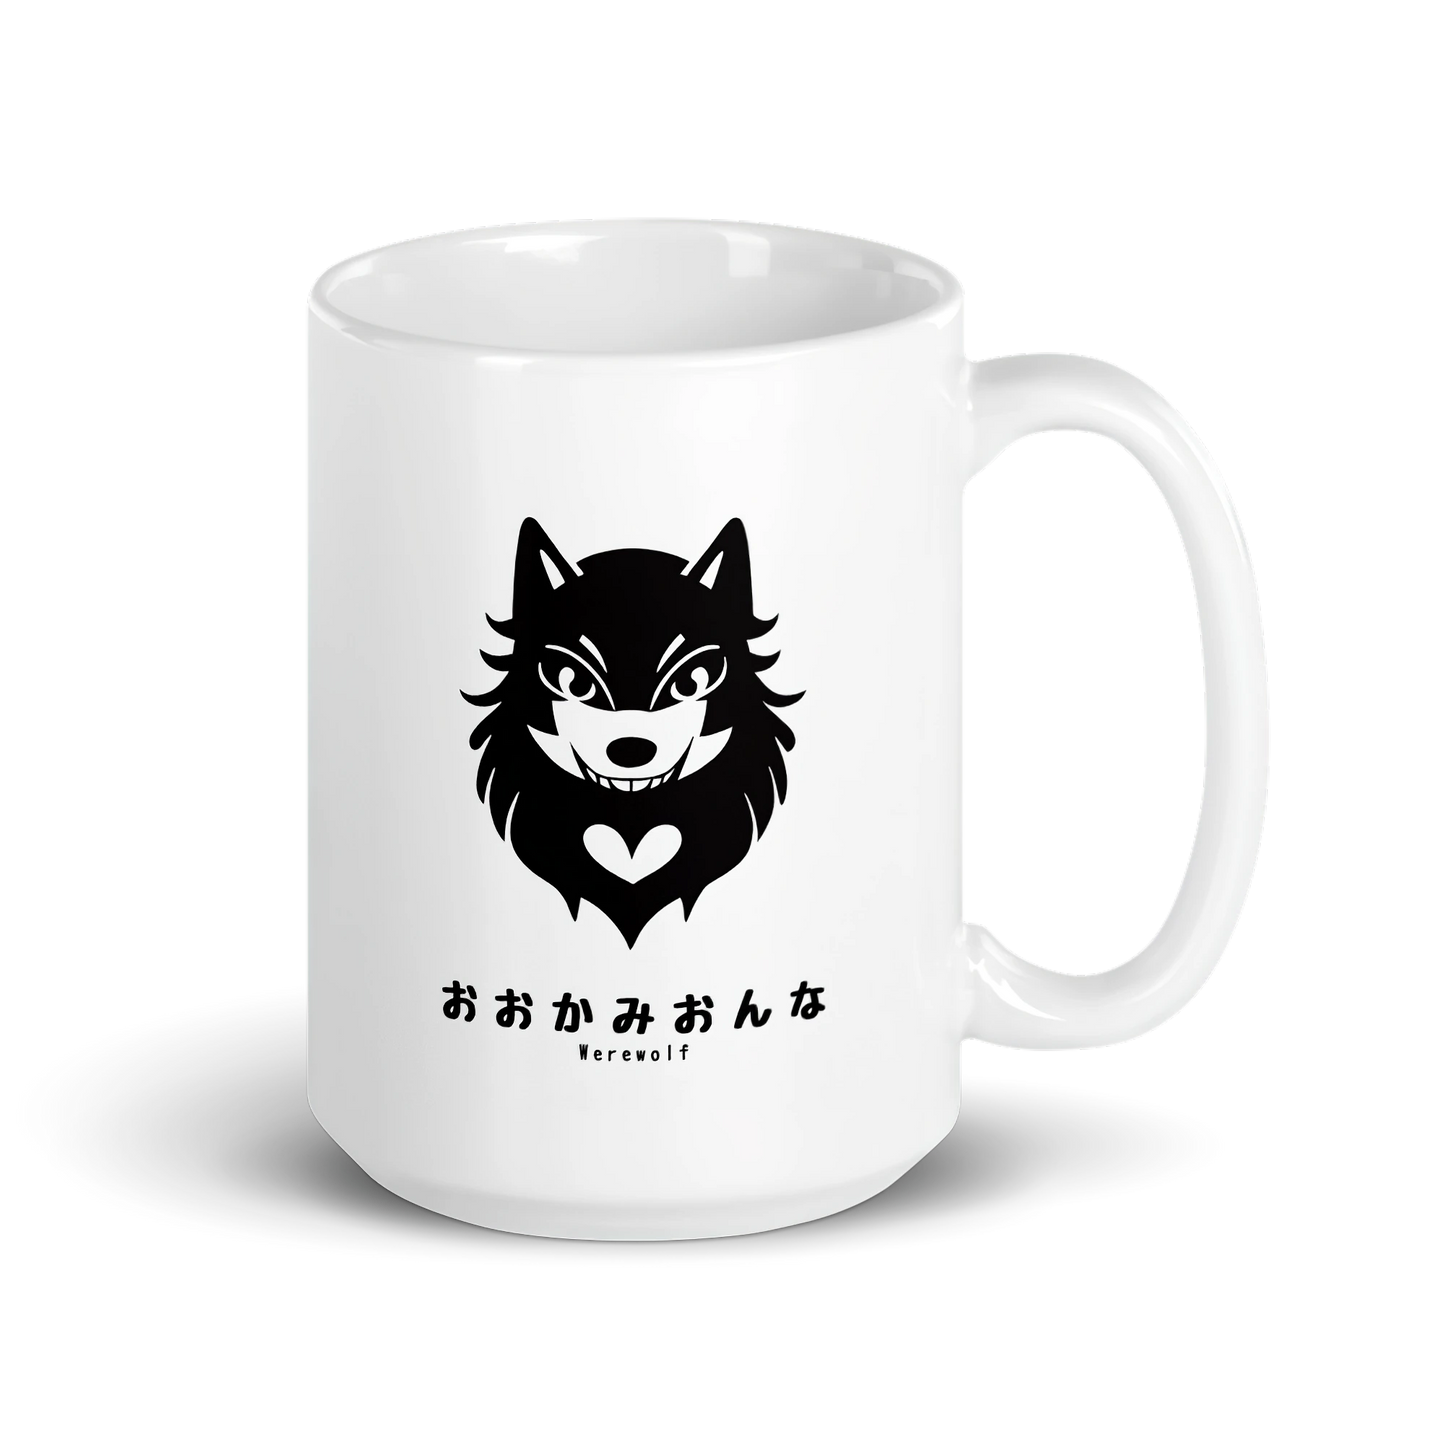 Kawaii Creatures - Werewolf: Ceramic Mug